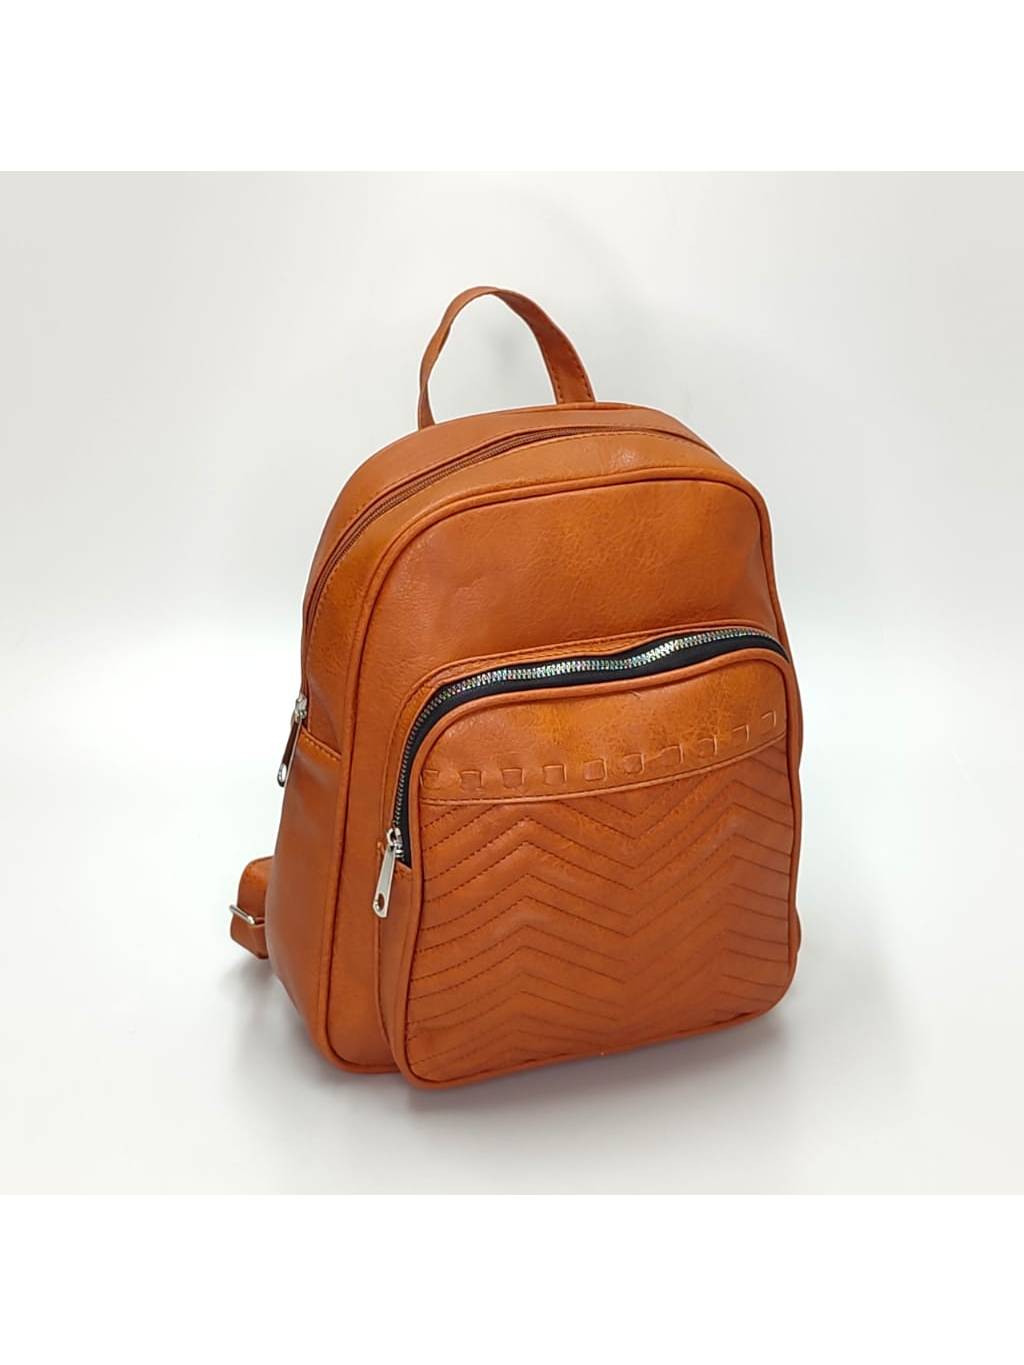 Dámsky ruksak DL0113 tehlový www.kabelky vypredaj (2)